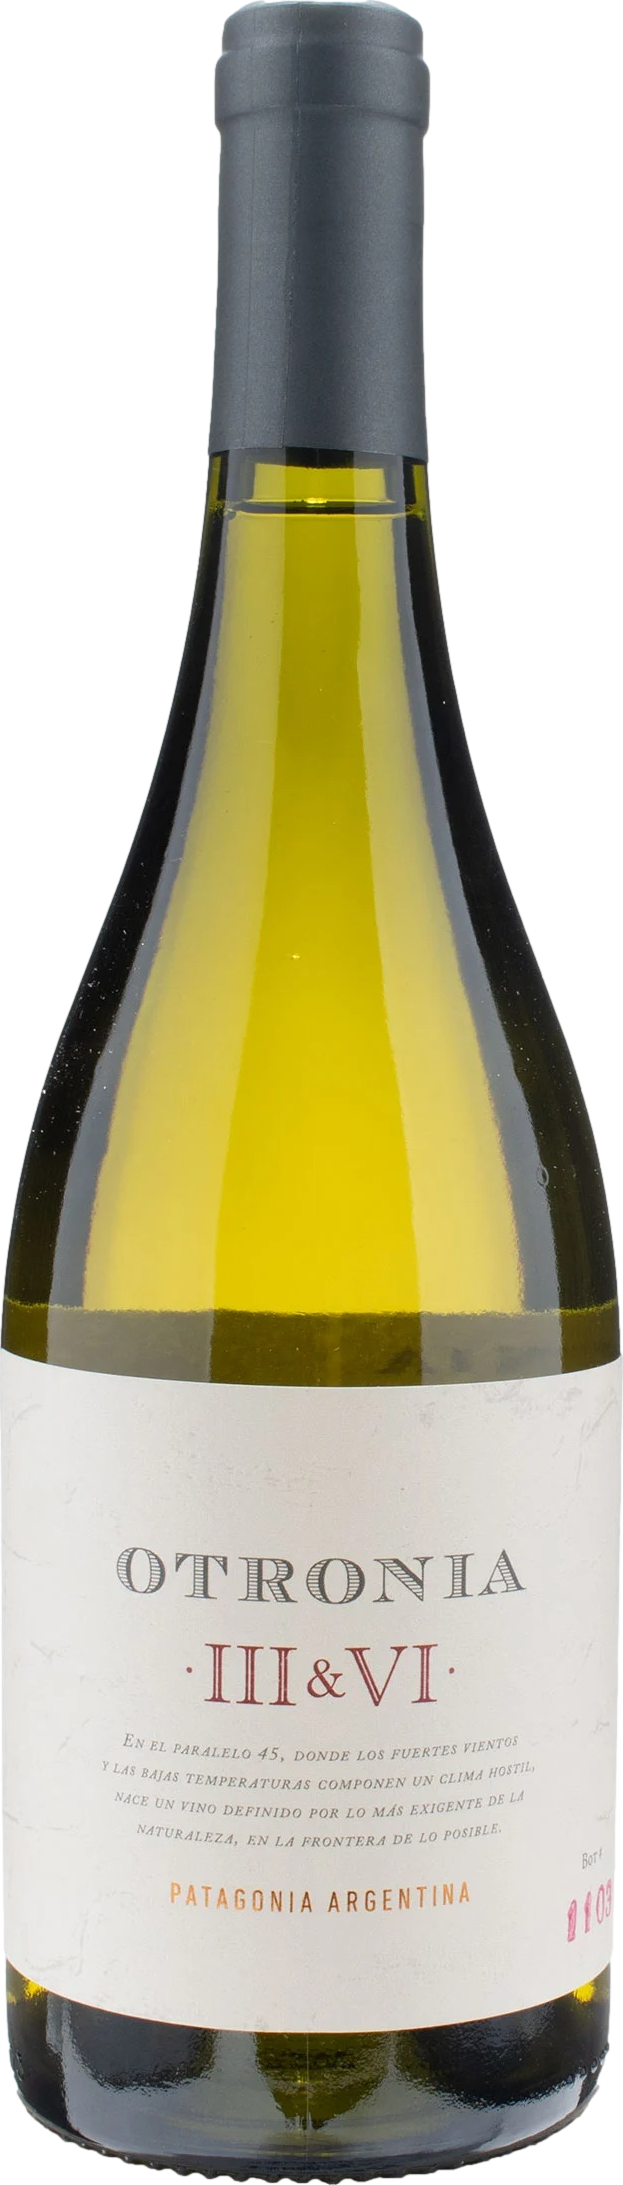 Otronia Block III а VI Chardonnay 2019 Bílé 13.5% 0.75 l